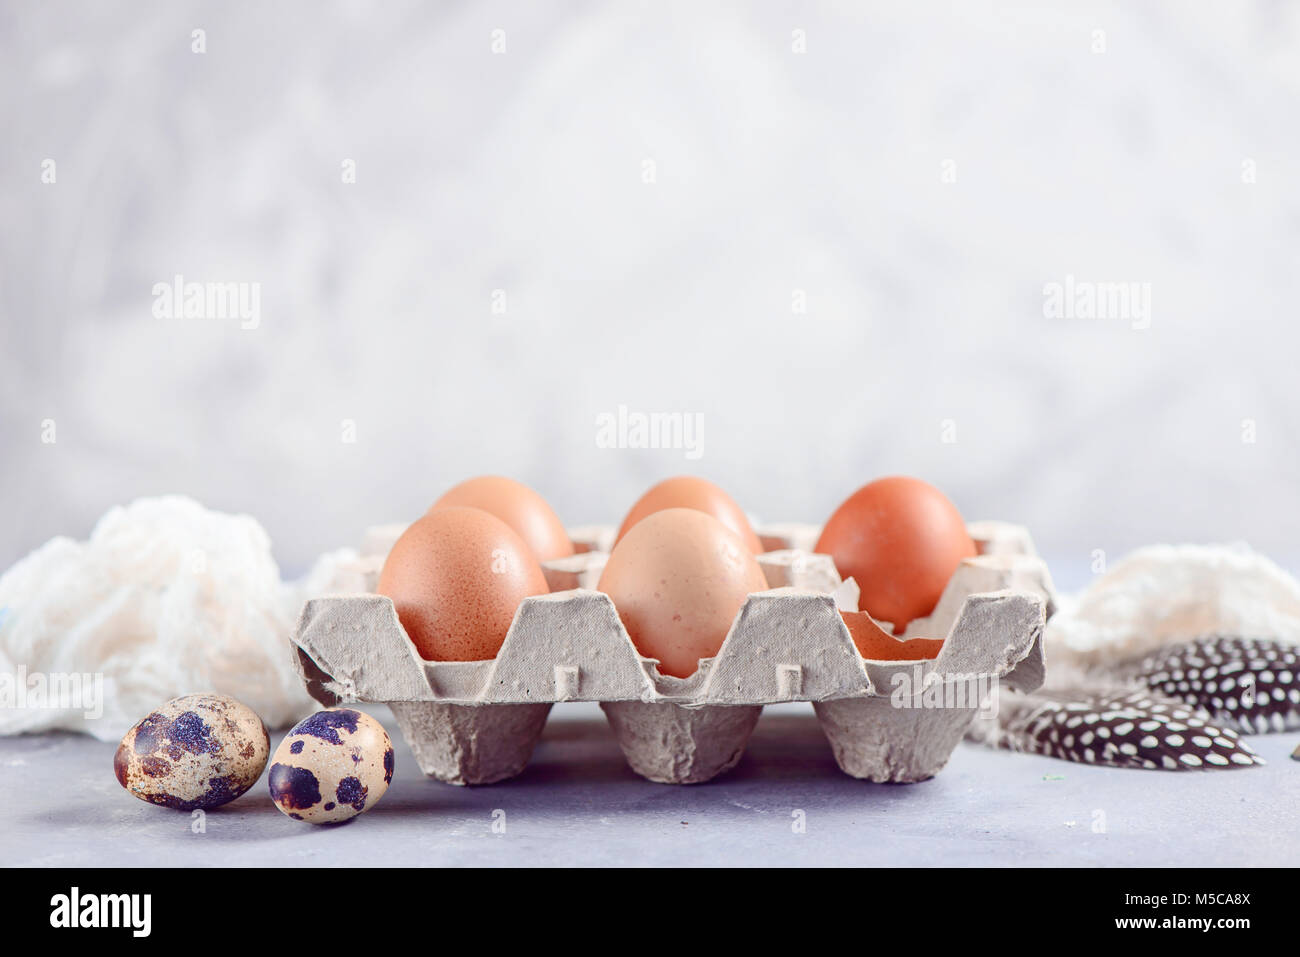 Uova di colore marrone a craft carton, pack su uno sfondo luminoso. Gli ingredienti freschi per la Pasqua di cottura. Tasto alto testata con copia spazio. Foto Stock